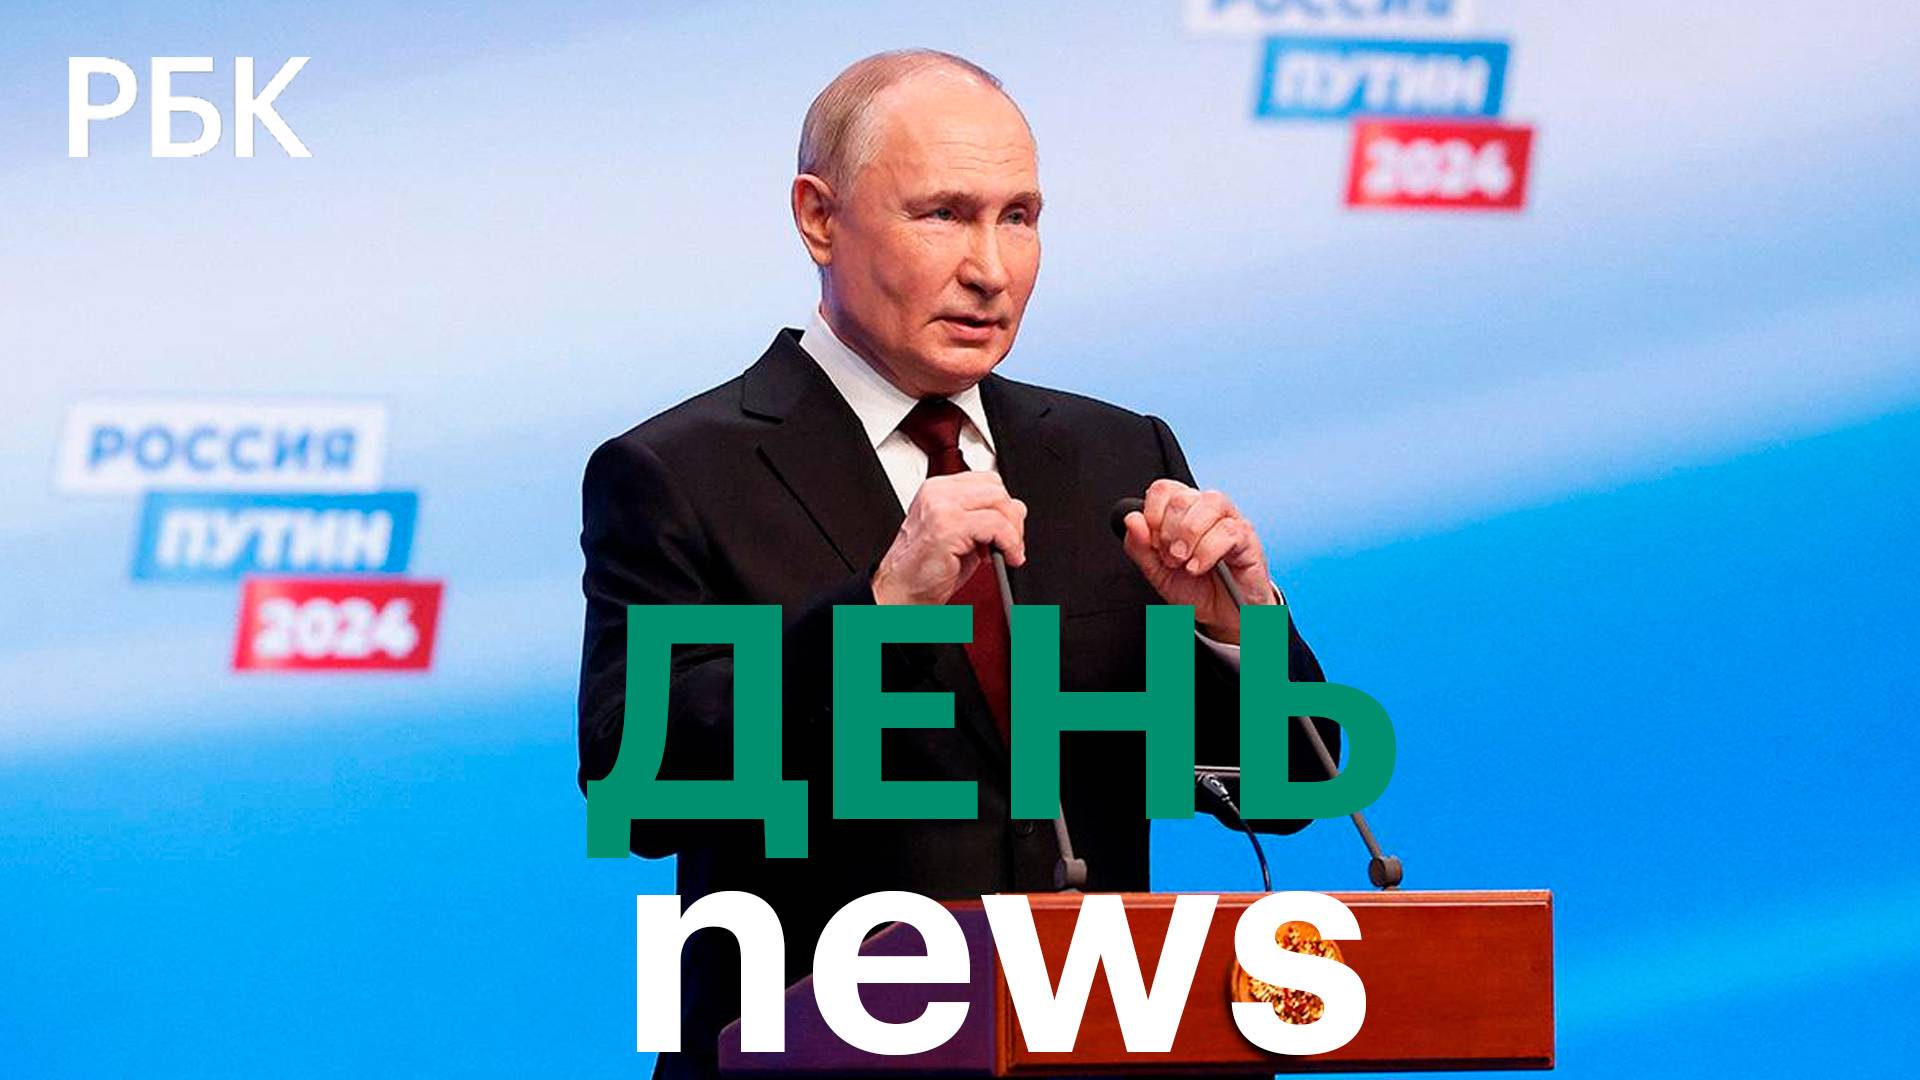 Выборы в России: признание со стороны международного сообщества